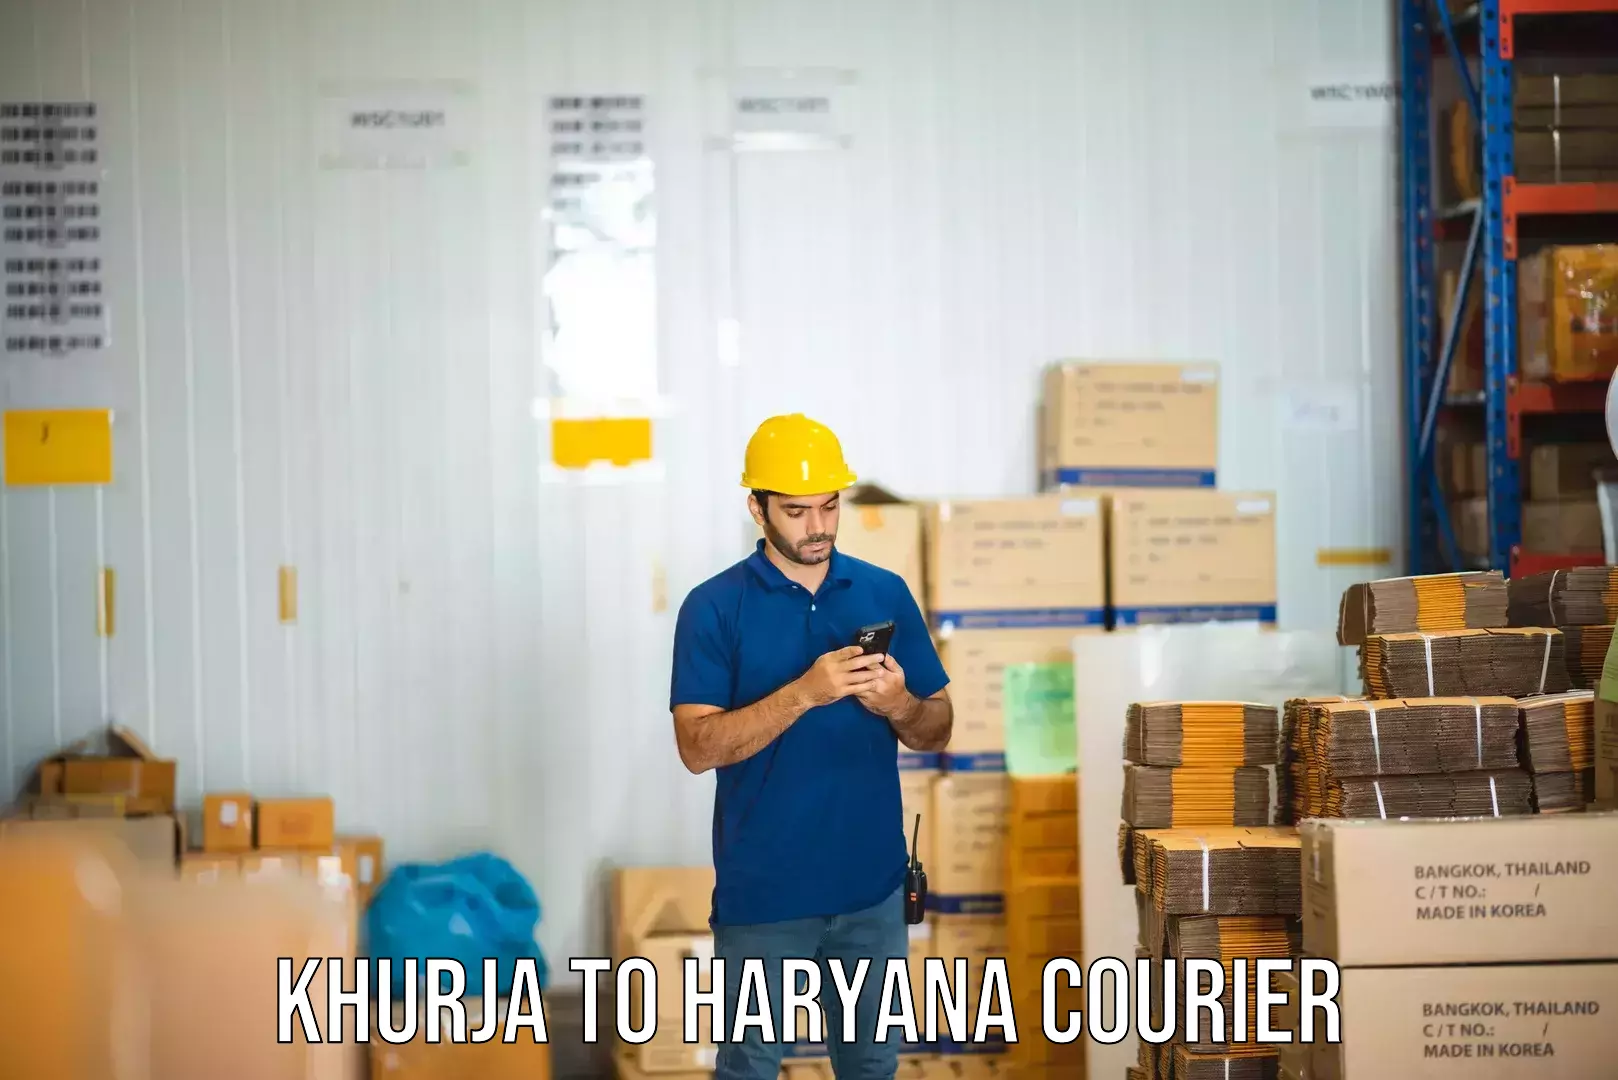 Parcel delivery in Khurja to Bilaspur Haryana